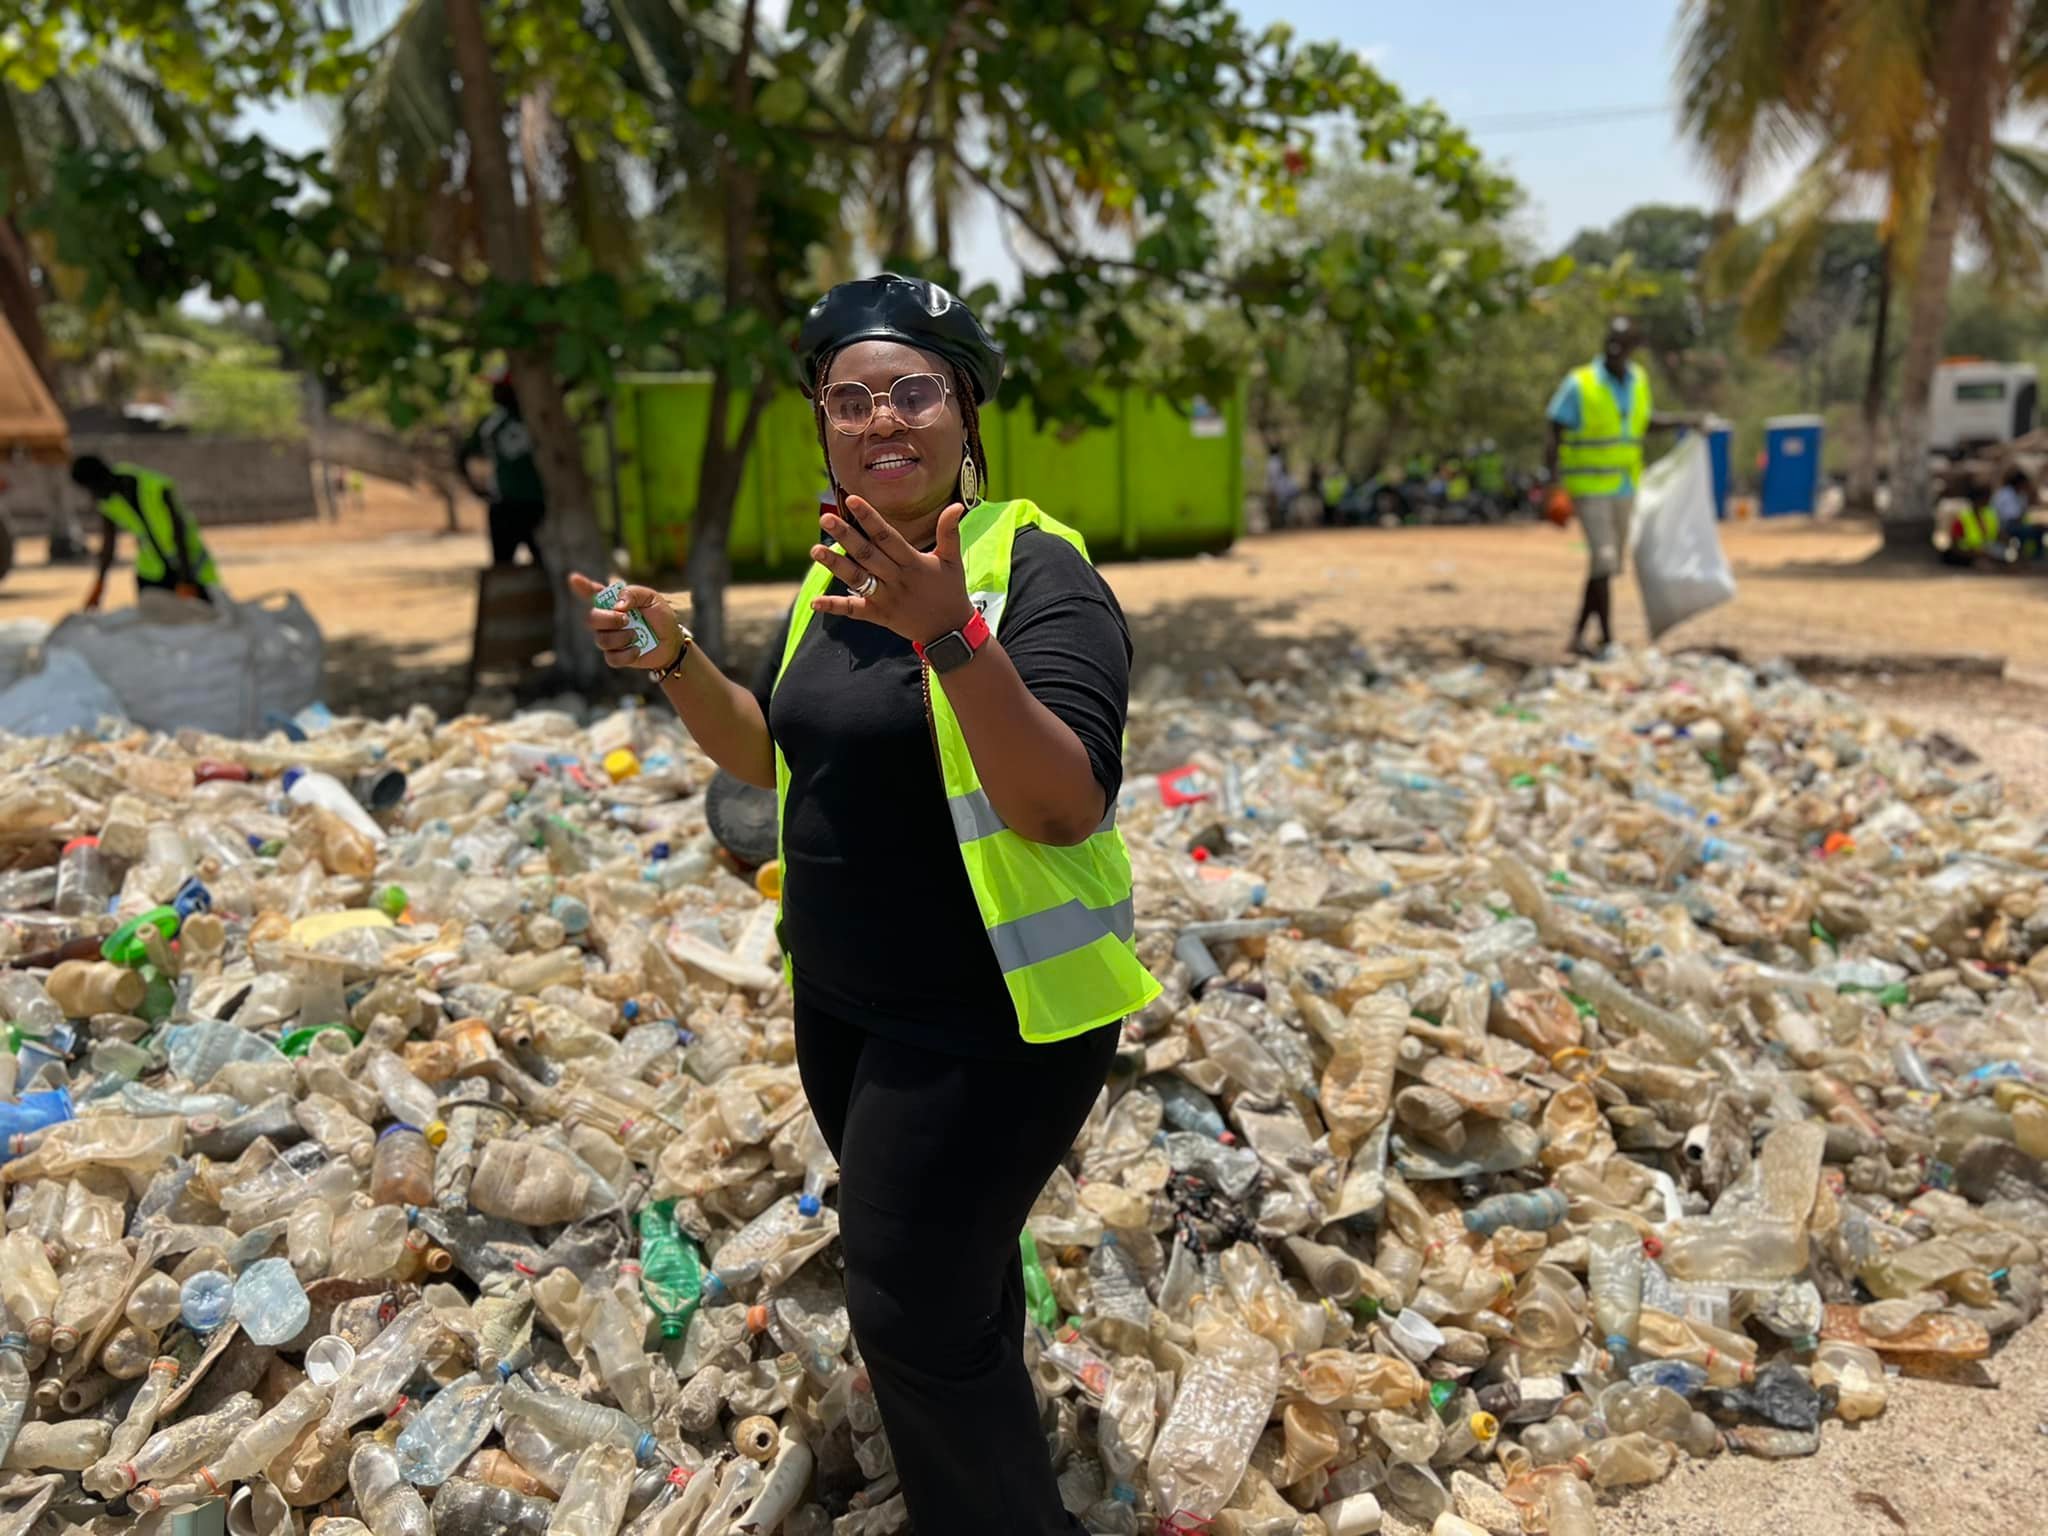 Nettoyage à la plage de Bénarès : La Fondatrice de Selfie Déchets, Fatoumata Chérif, félicite et appelle à la responsabilité citoyenne de chacun